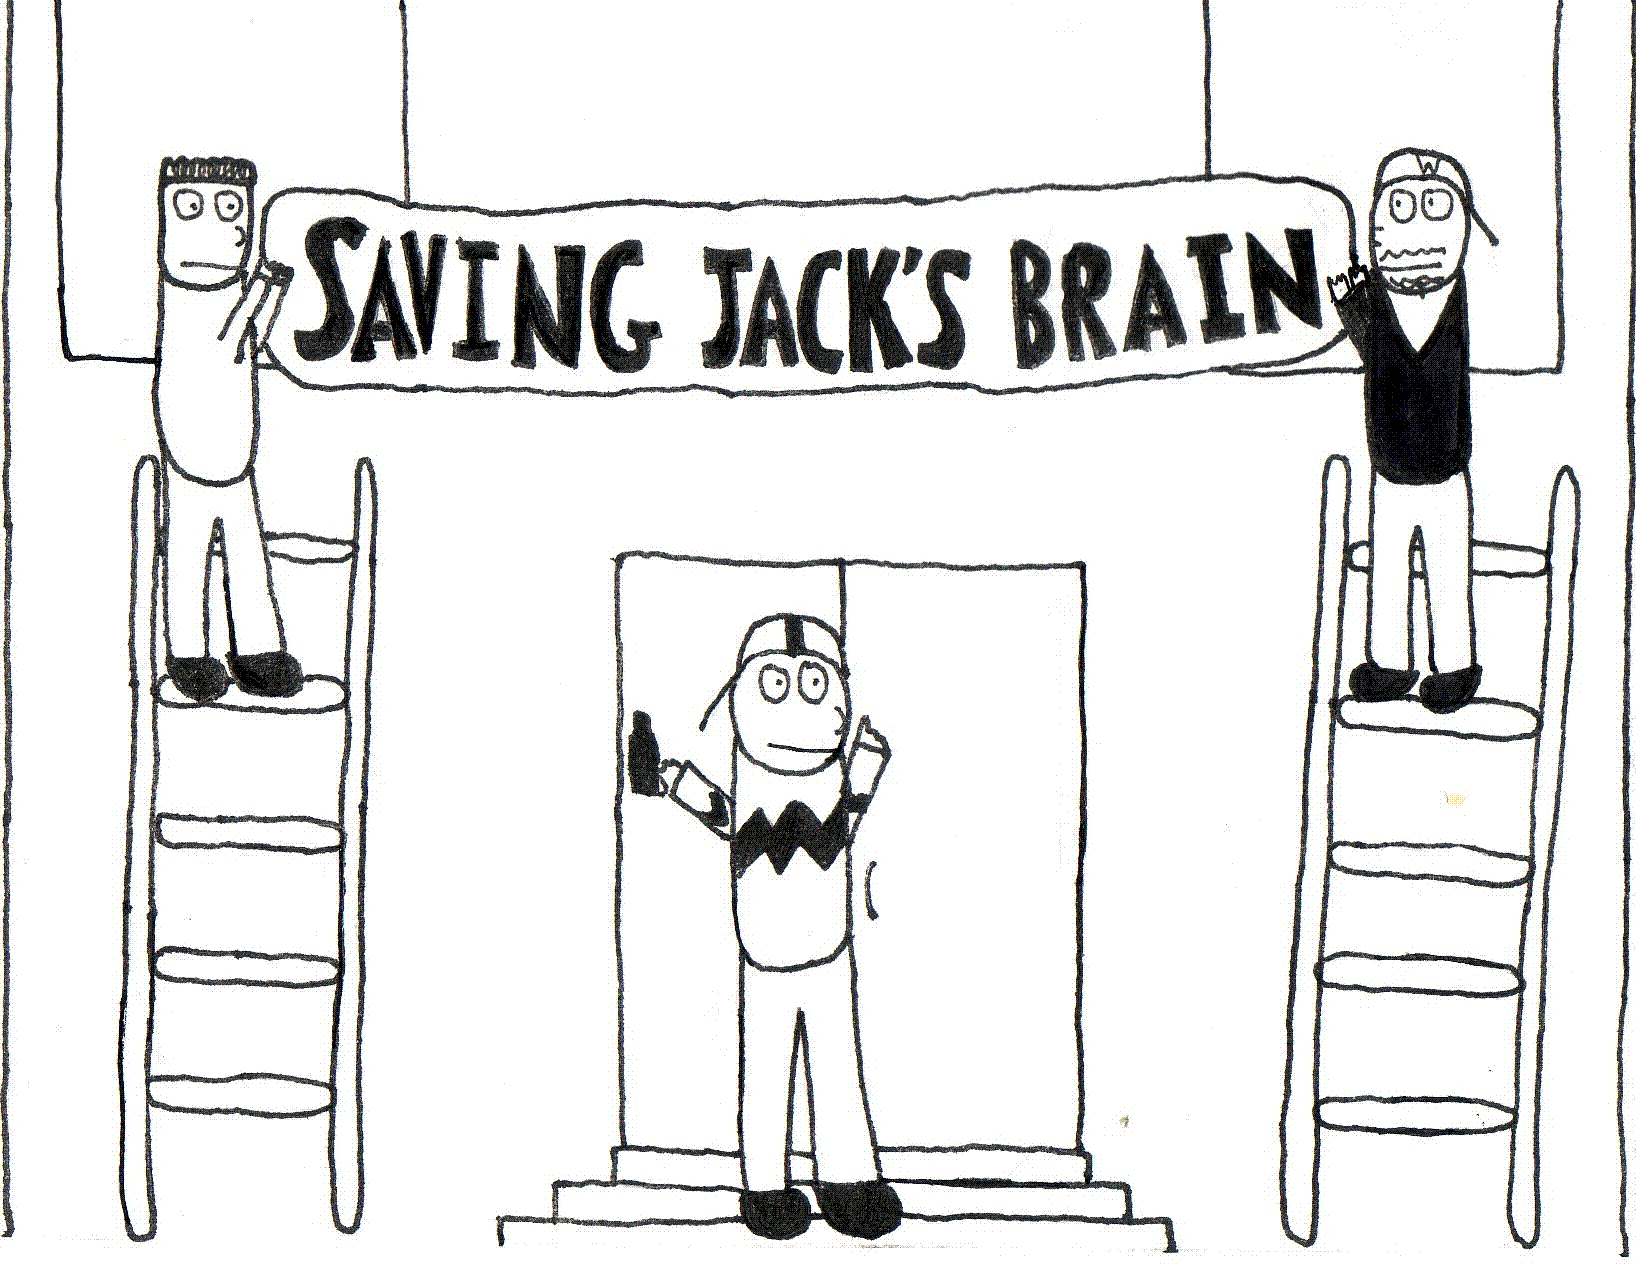 Saving Jack's Brain